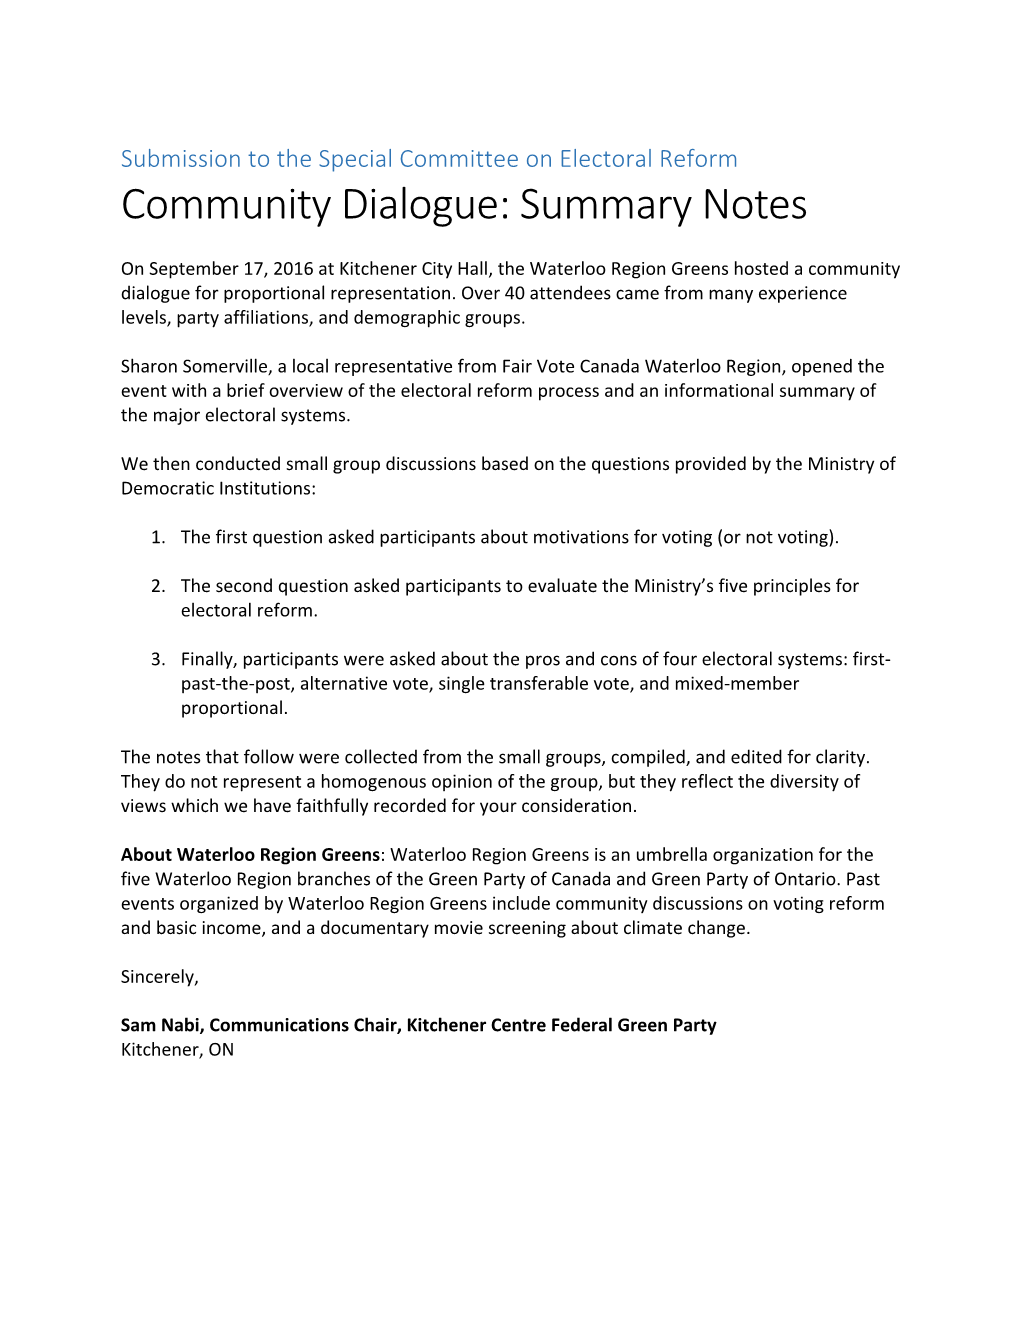 Community Dialogue: Summary Notes